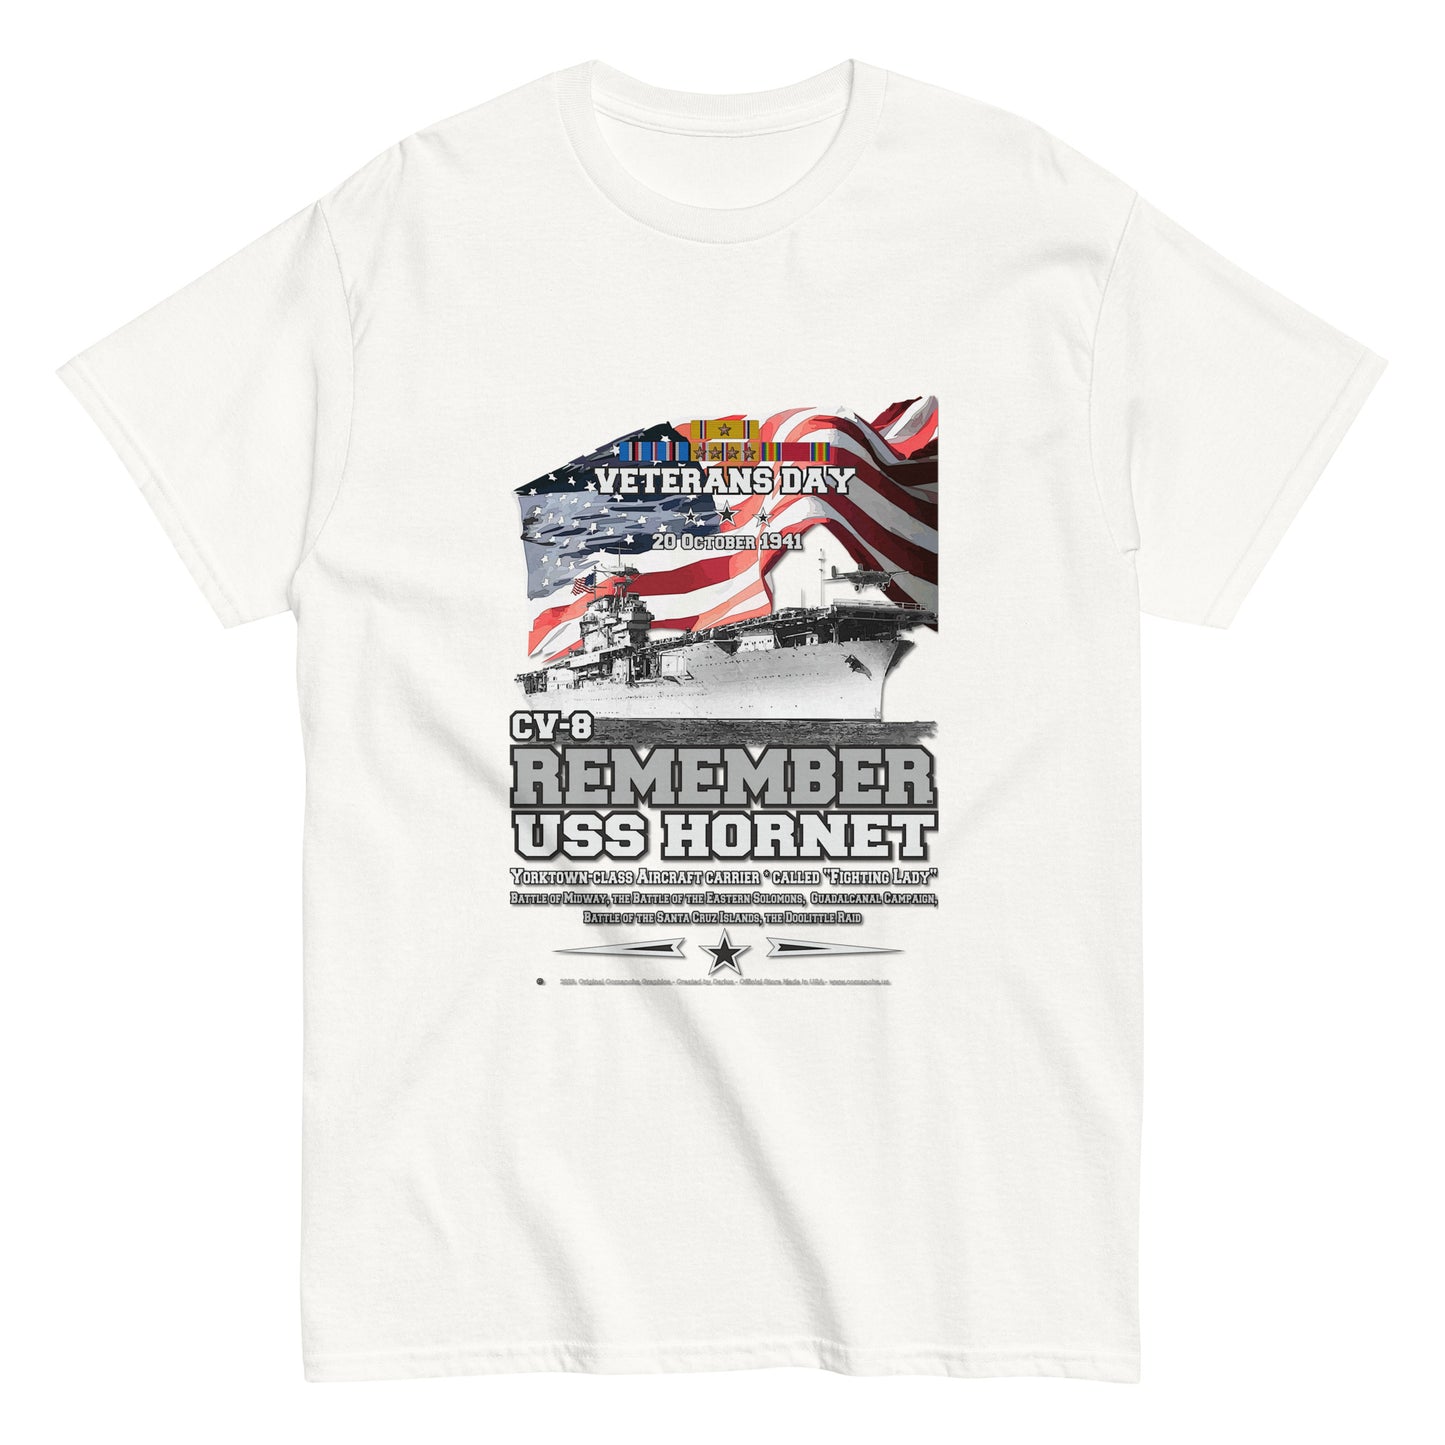 USS HORNET CV-8 Tee, US navy T-shirt,USS HORNET Tee, US NAVY Veterans T-Shirt, Aircraft Carrier Veterans Classic T-Shirt, Comancha.us T-Shirt Store, USS HORNET CV-8 t-shirt, Aircraft Carrier Veterans Classic T-Shirt, Comancha.us T-Shirt, 